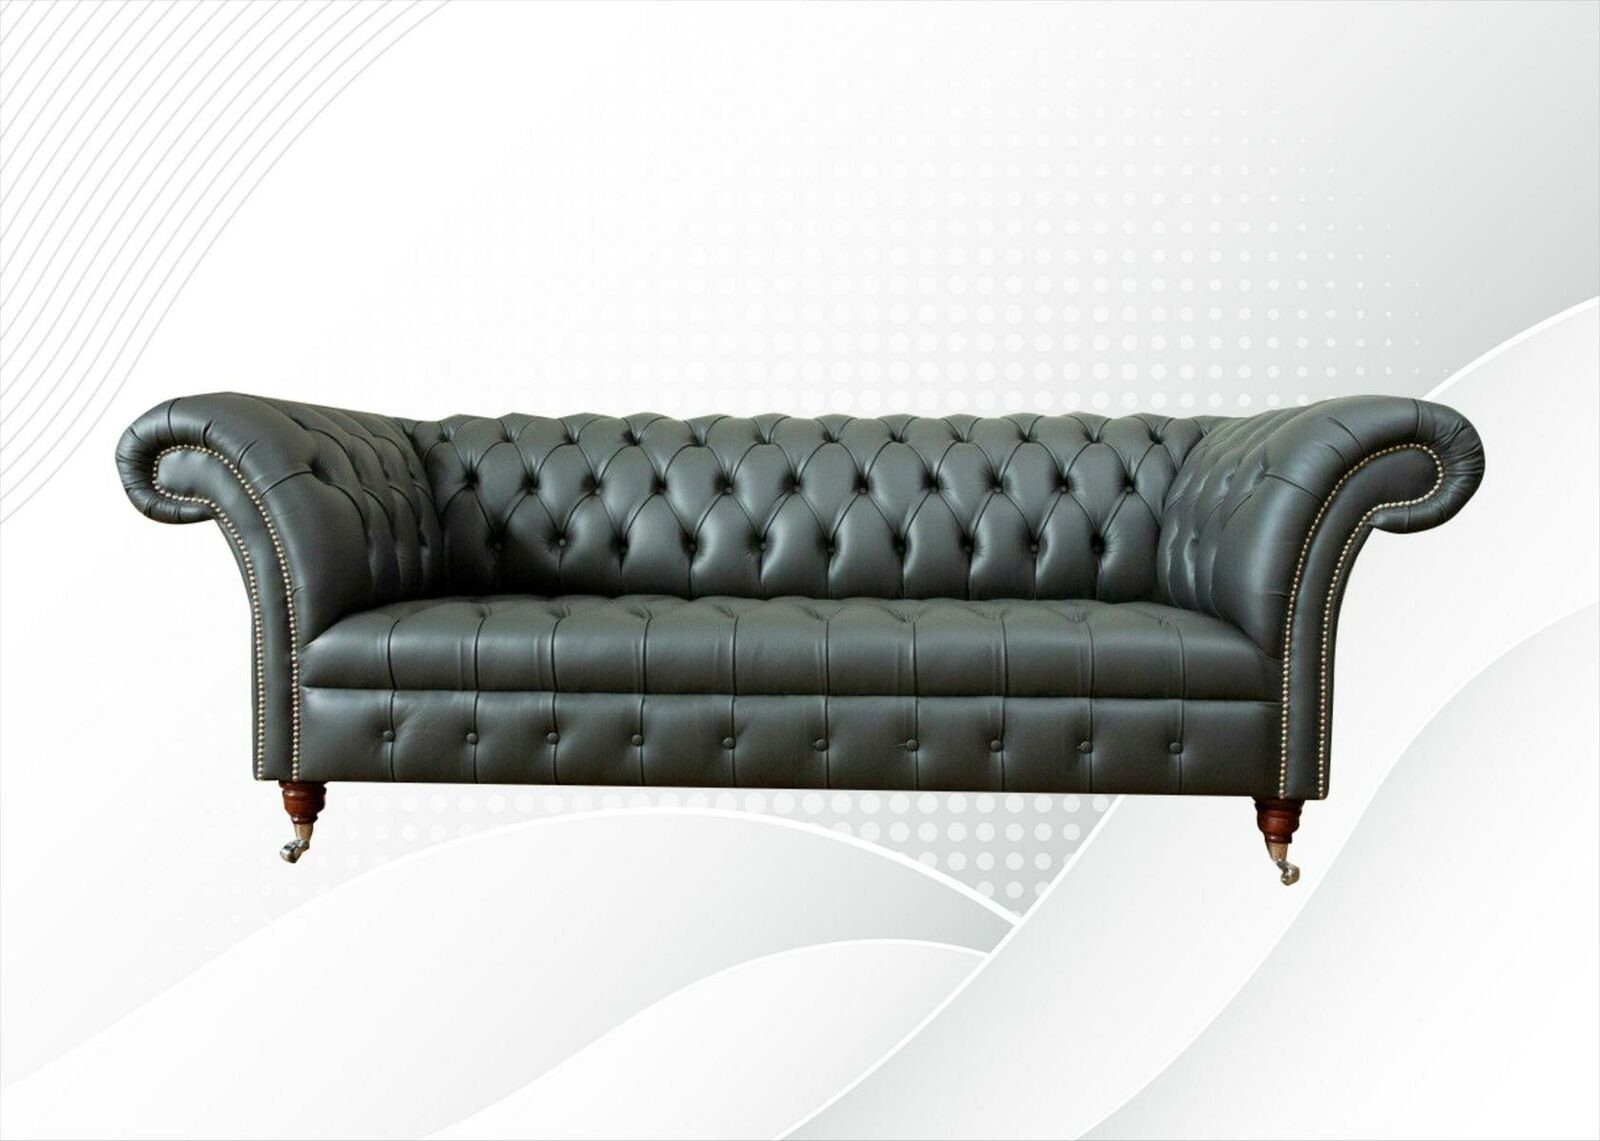 JVmoebel Chesterfield-Sofa, Chesterfield Leder Graue couchen Modern Design Couchen Sofa xxl big Sofas Möbel